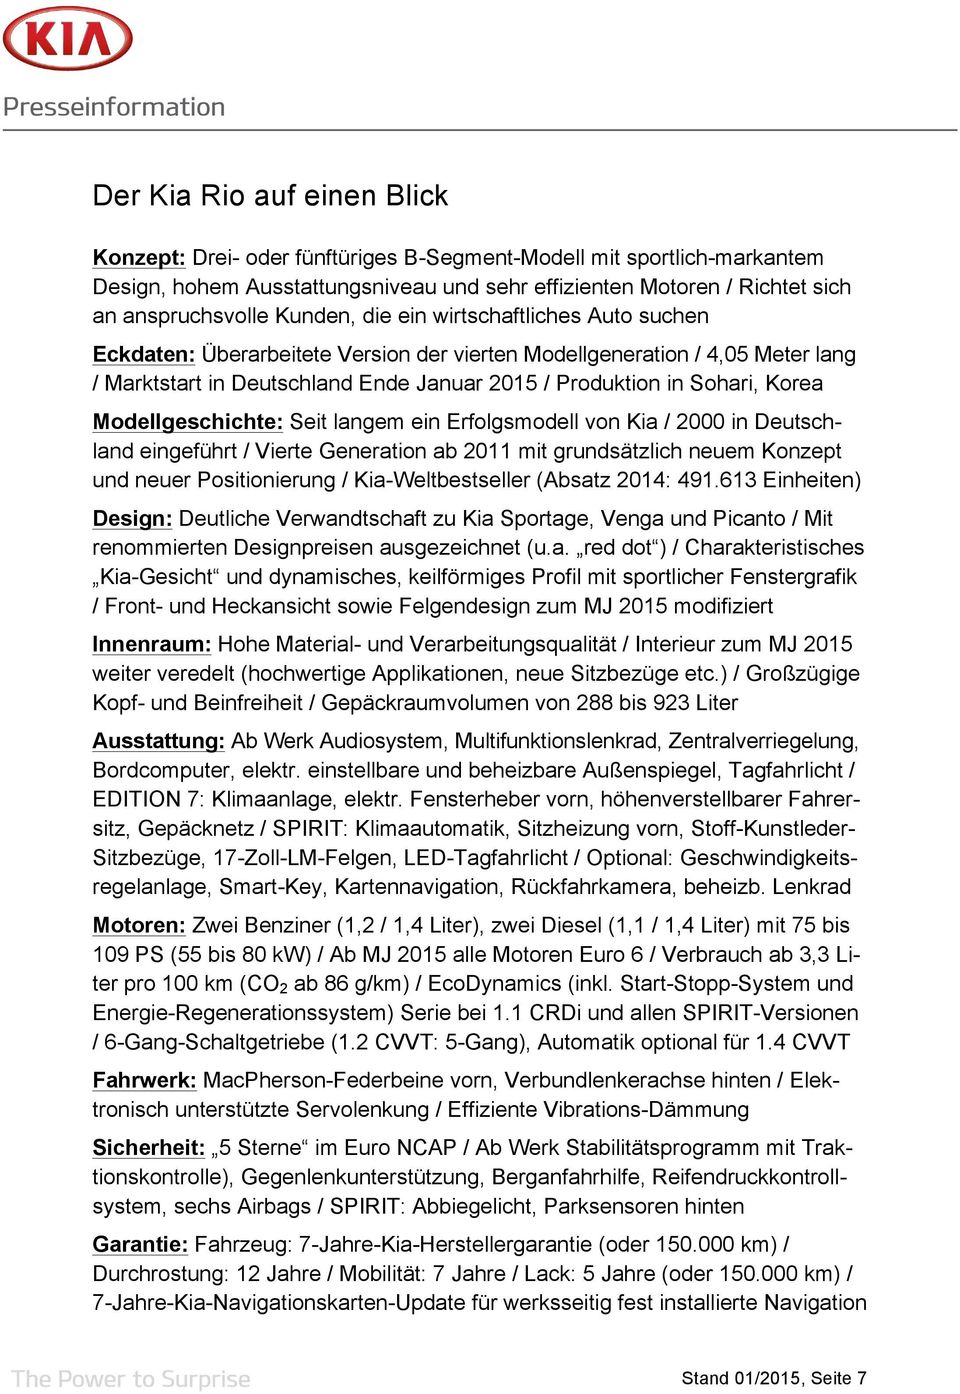 Modellgeschichte: Seit langem ein Erfolgsmodell von Kia / 2000 in Deutschland eingeführt / Vierte Generation ab 2011 mit grundsätzlich neuem Konzept und neuer Positionierung / Kia-Weltbestseller